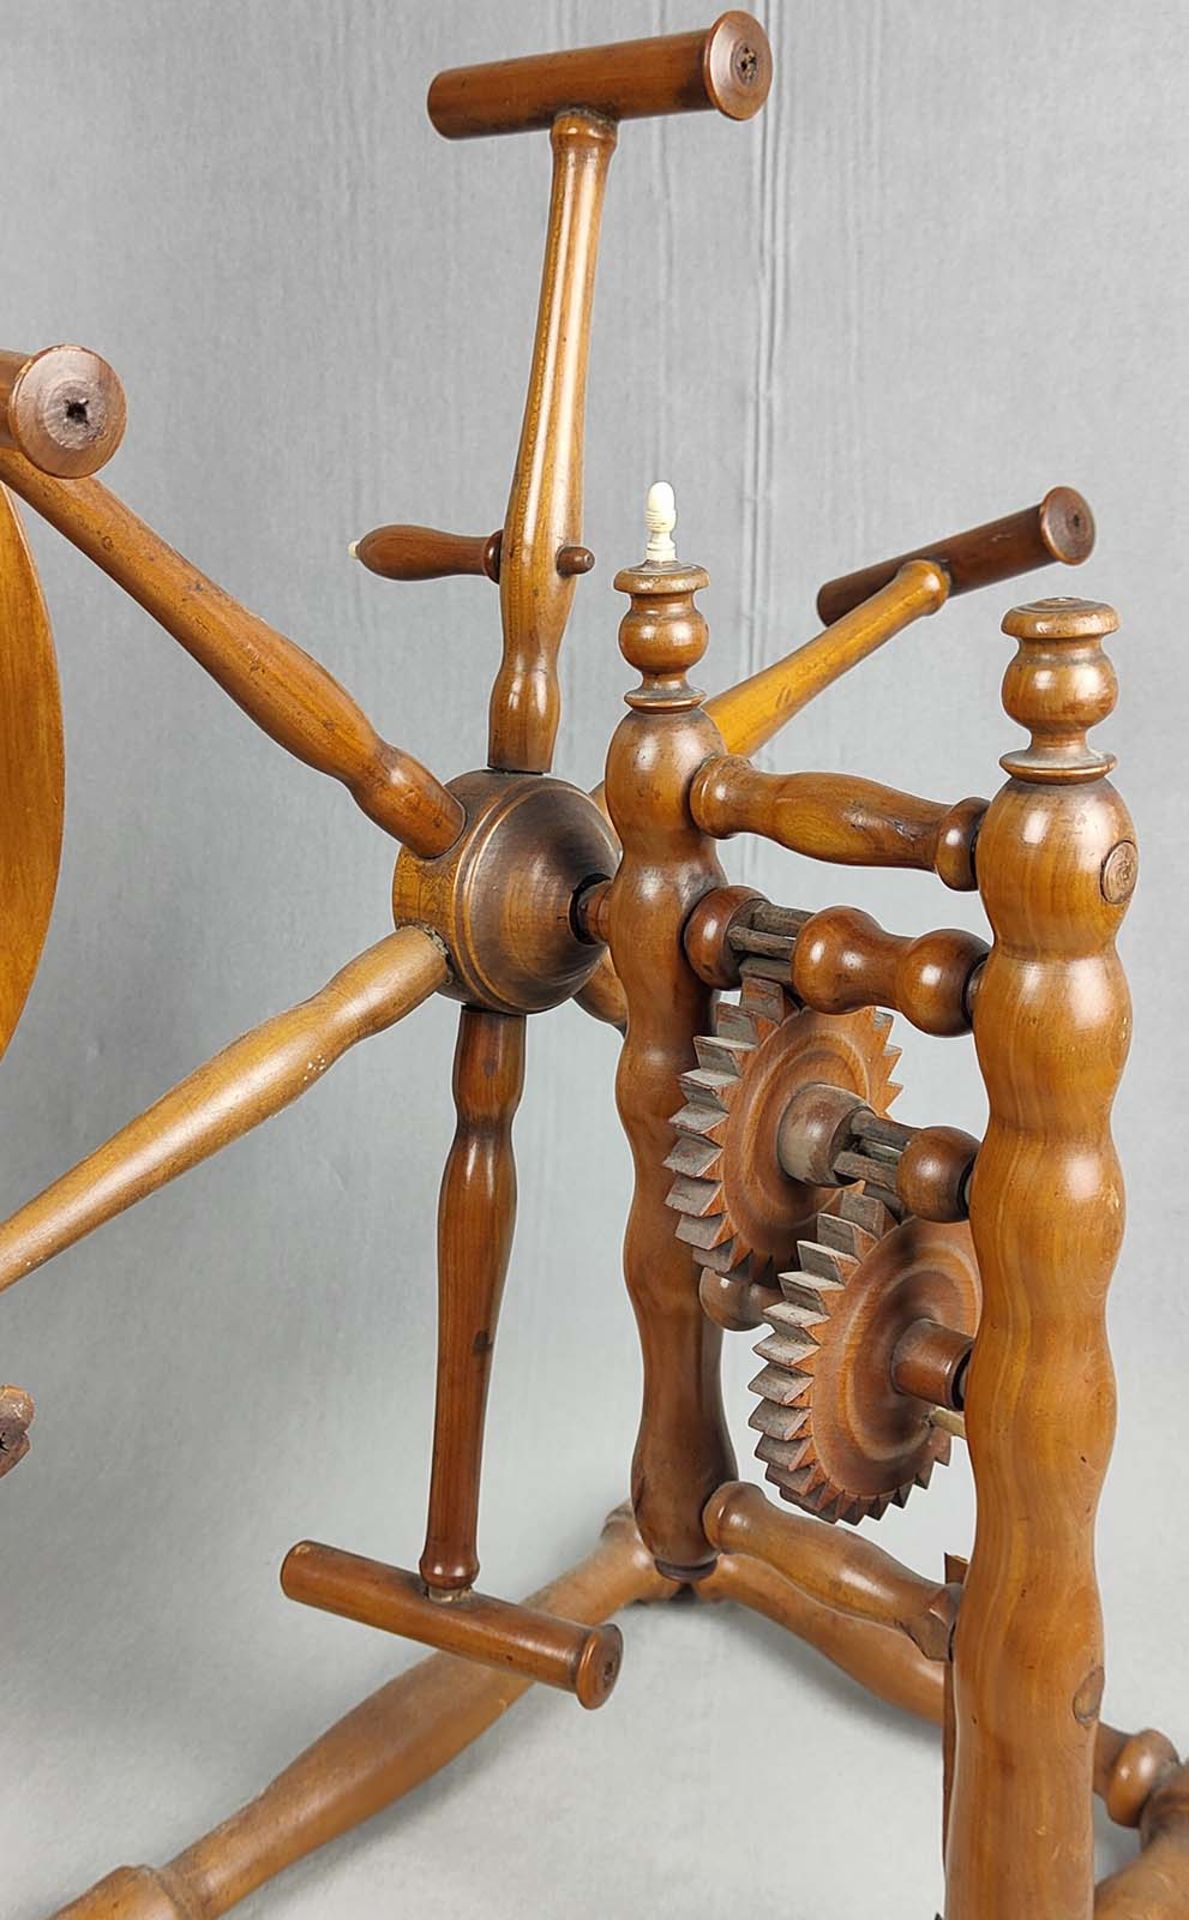 Kirschbaum Spinnrad mit Haspel 1872 - Bild 5 aus 5